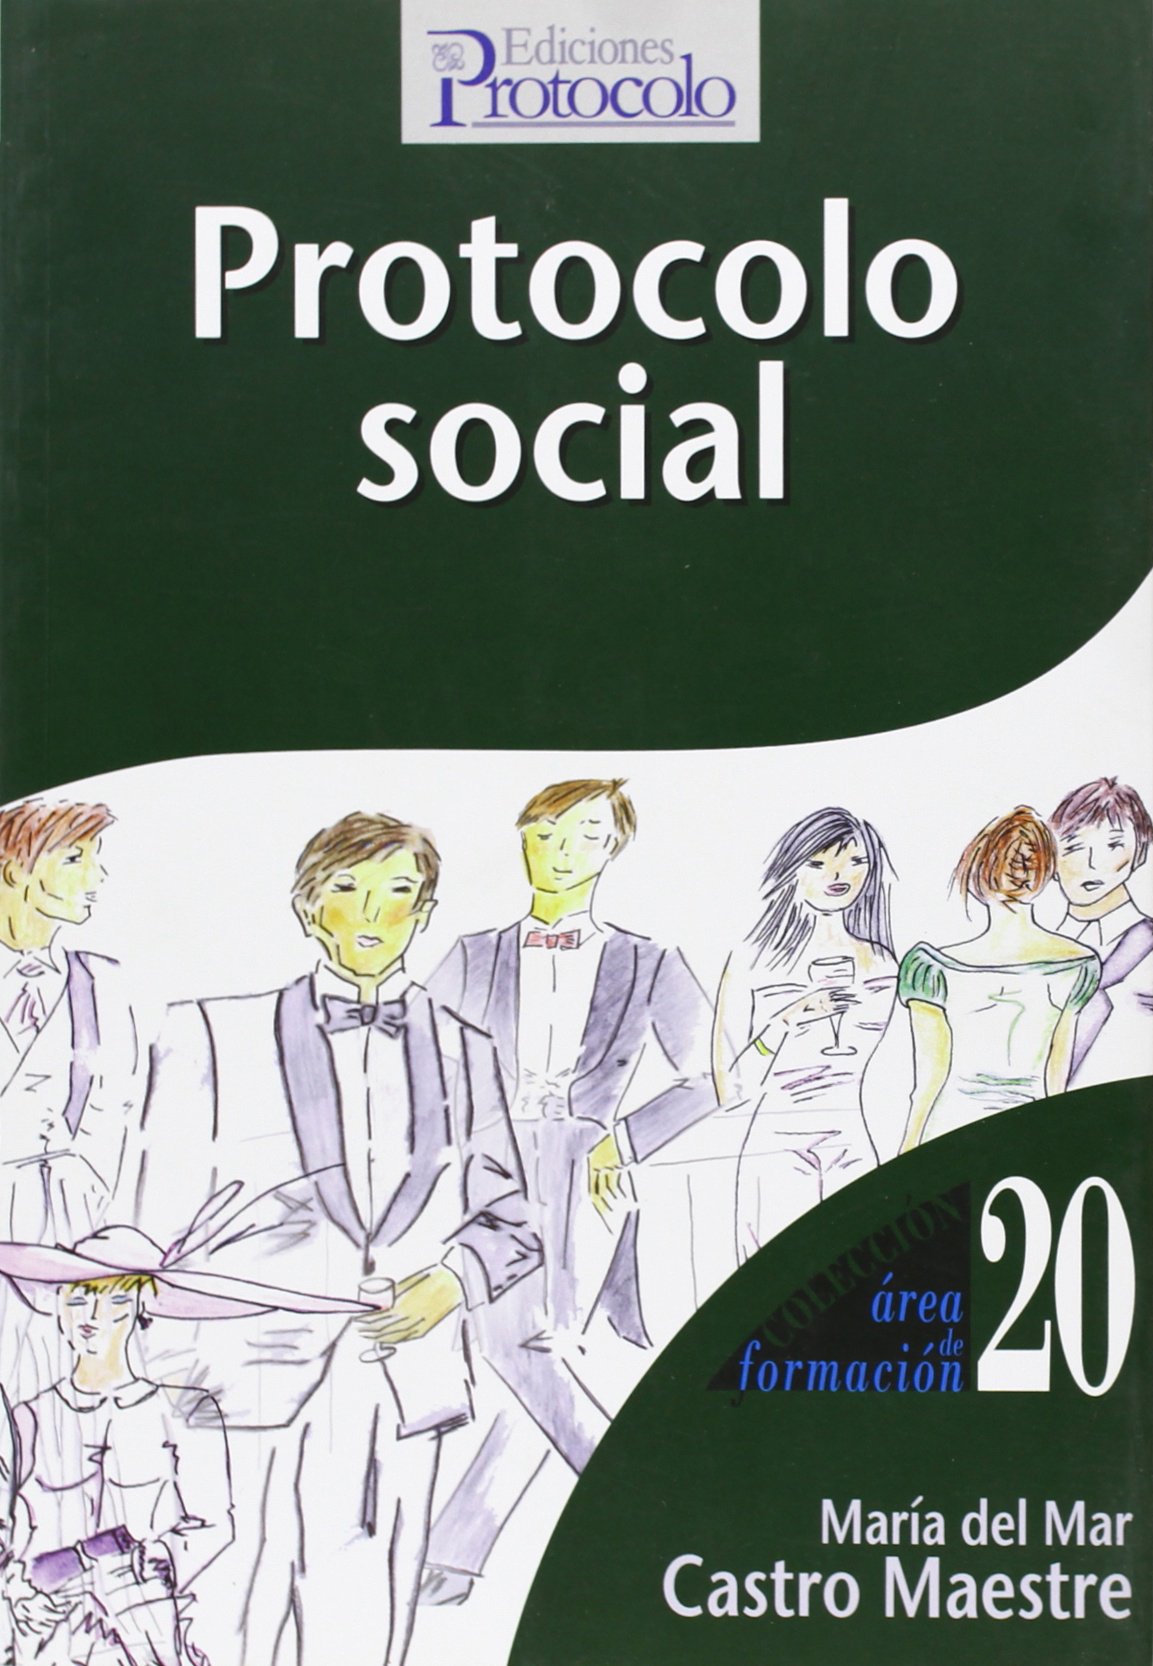 Protocolo Social hace una simbiosis entre tradición y progreso, respetando la primera pero capacitándola con la innovación necesaria para adecuarla a la realidad social que vivimos, dignificando y ejemplarizando las relaciones sociales en el marco del res